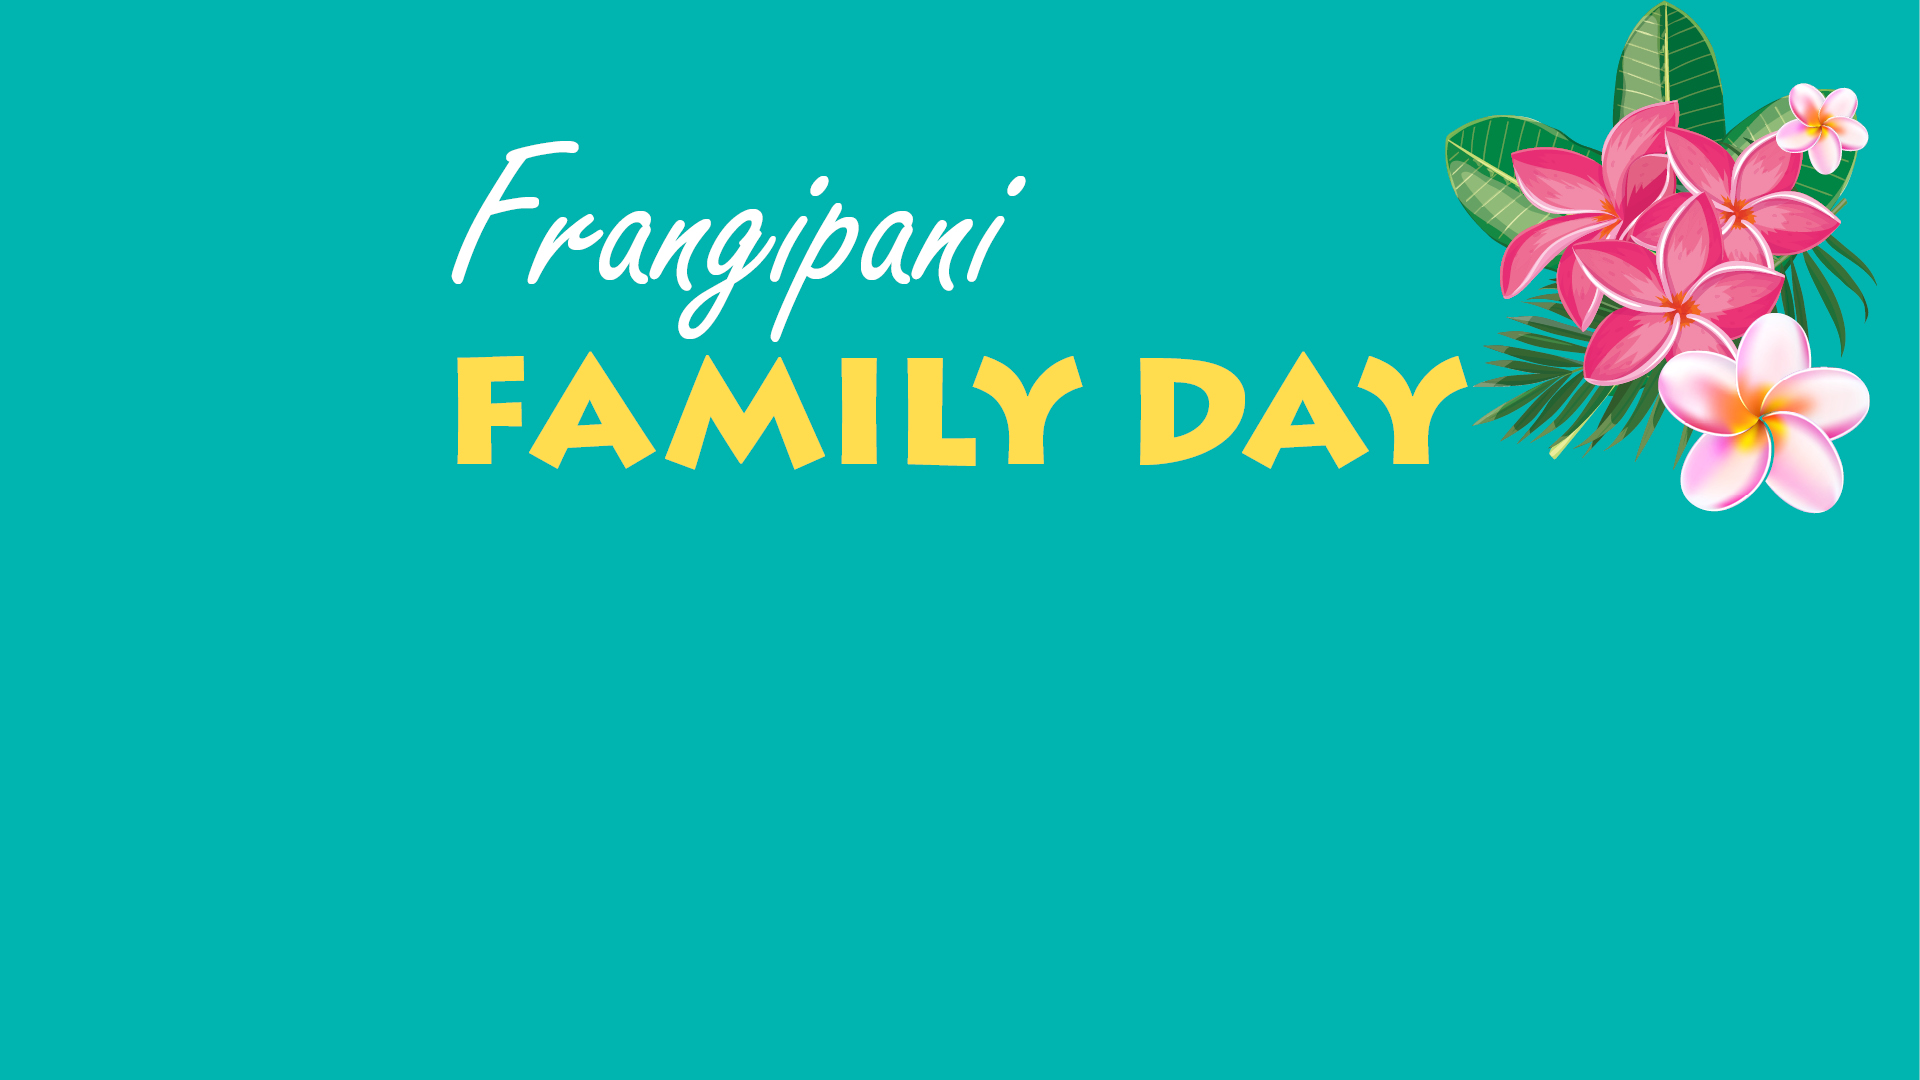 Frangipani Family Day image for newsletter.jpg